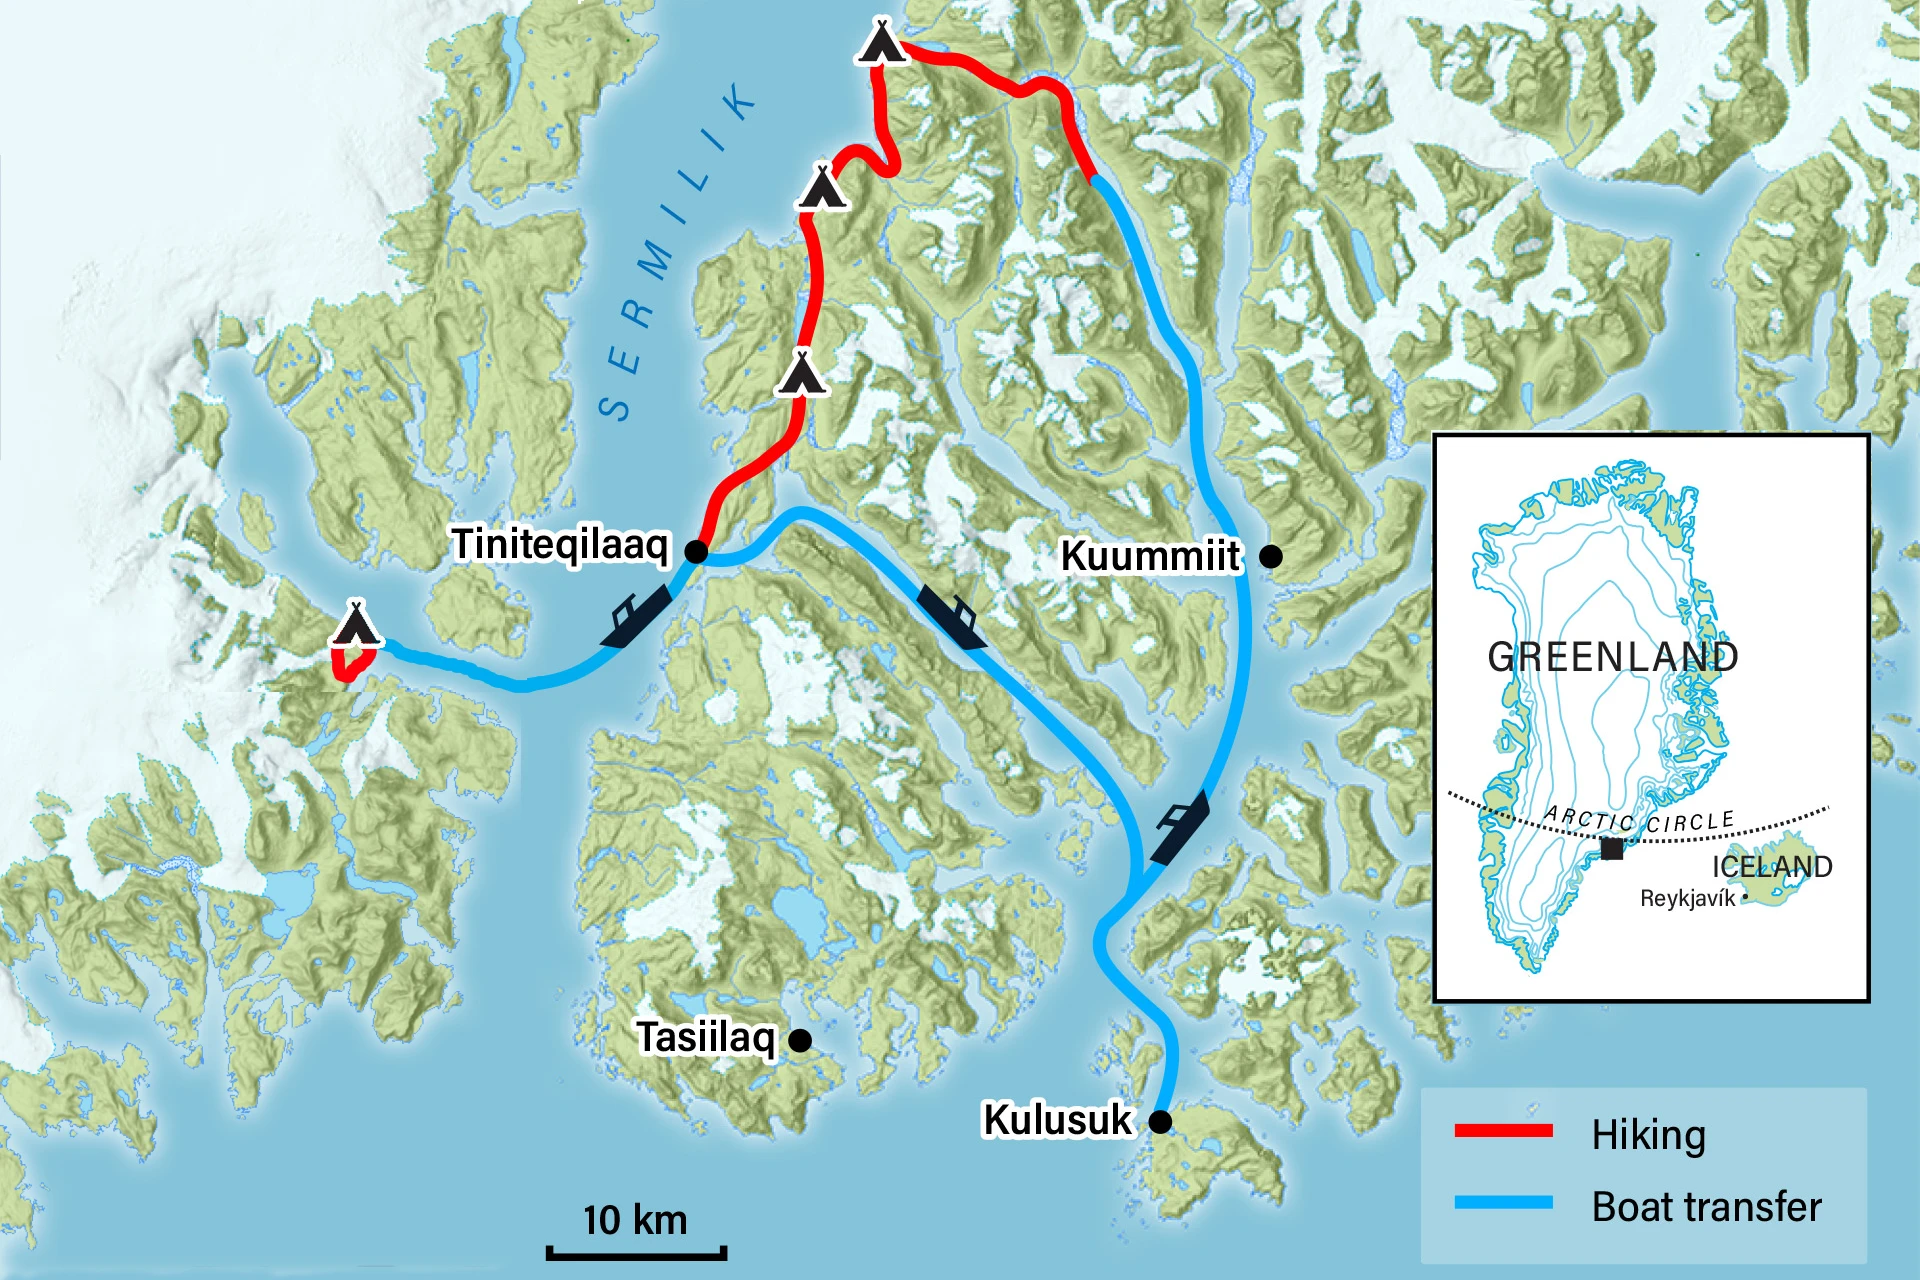 Gre02 - The Icefjord Trek